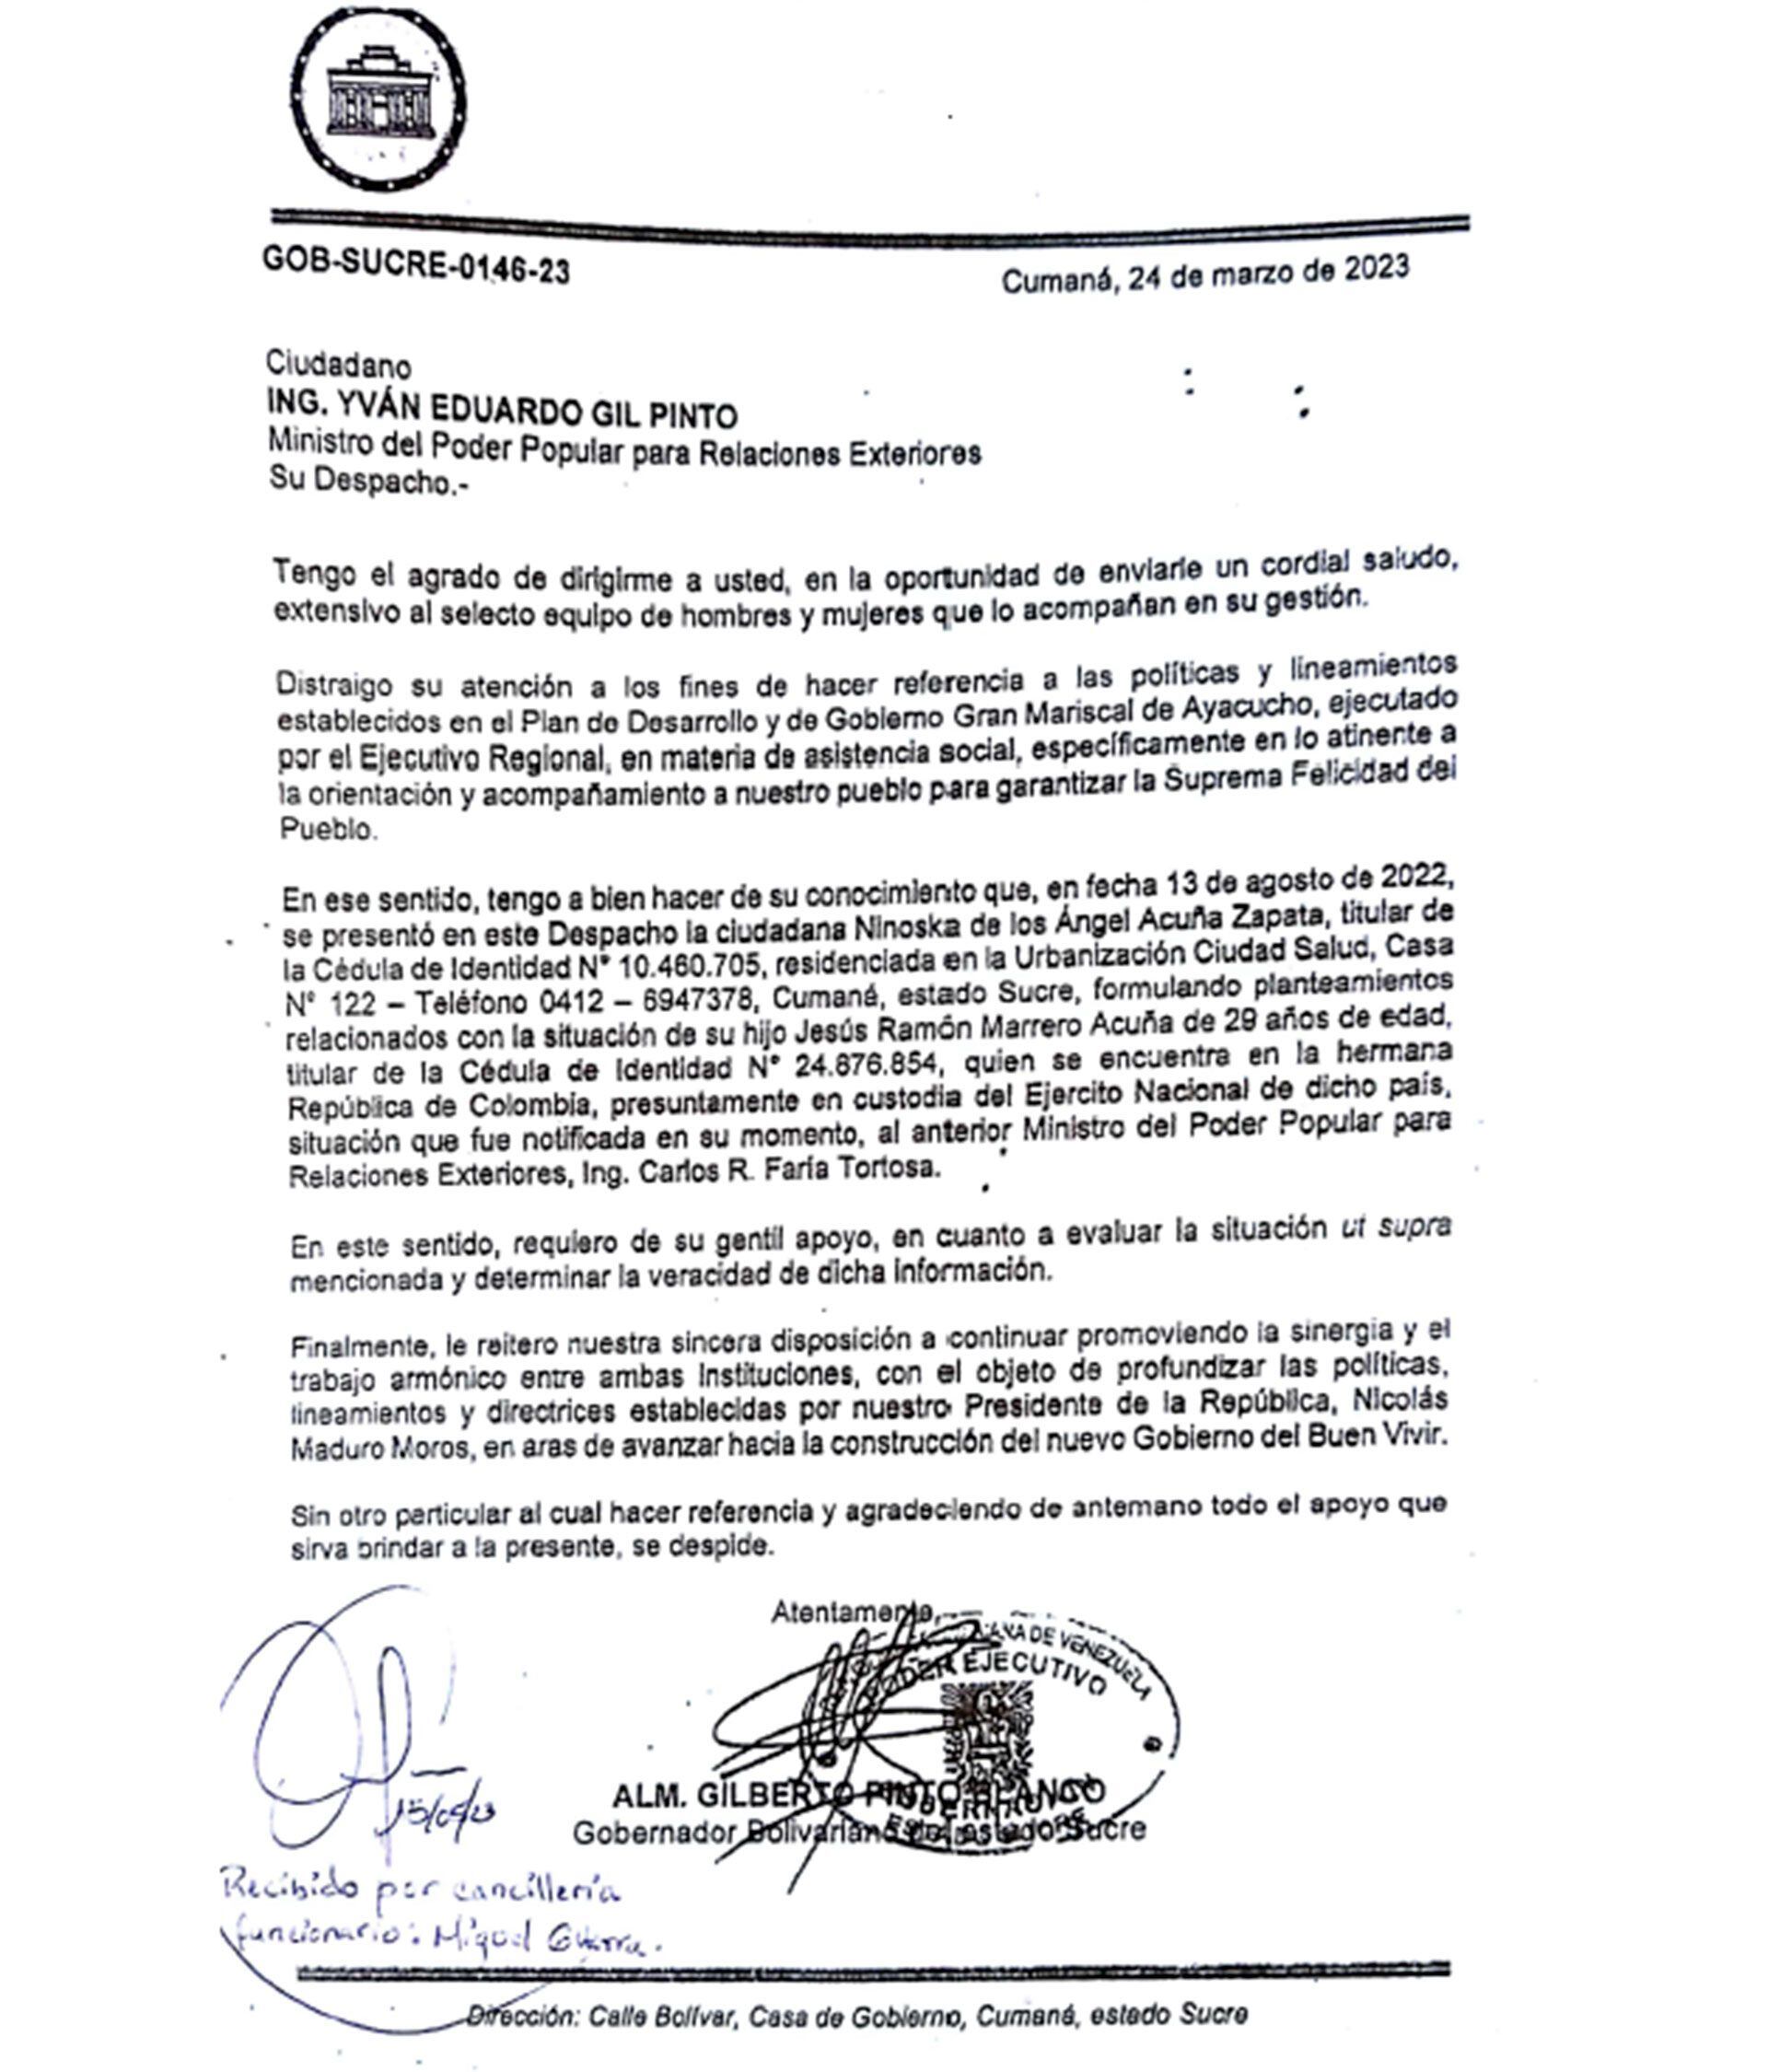 El gobernador Gilberto Pinto notificó a la Cancillería